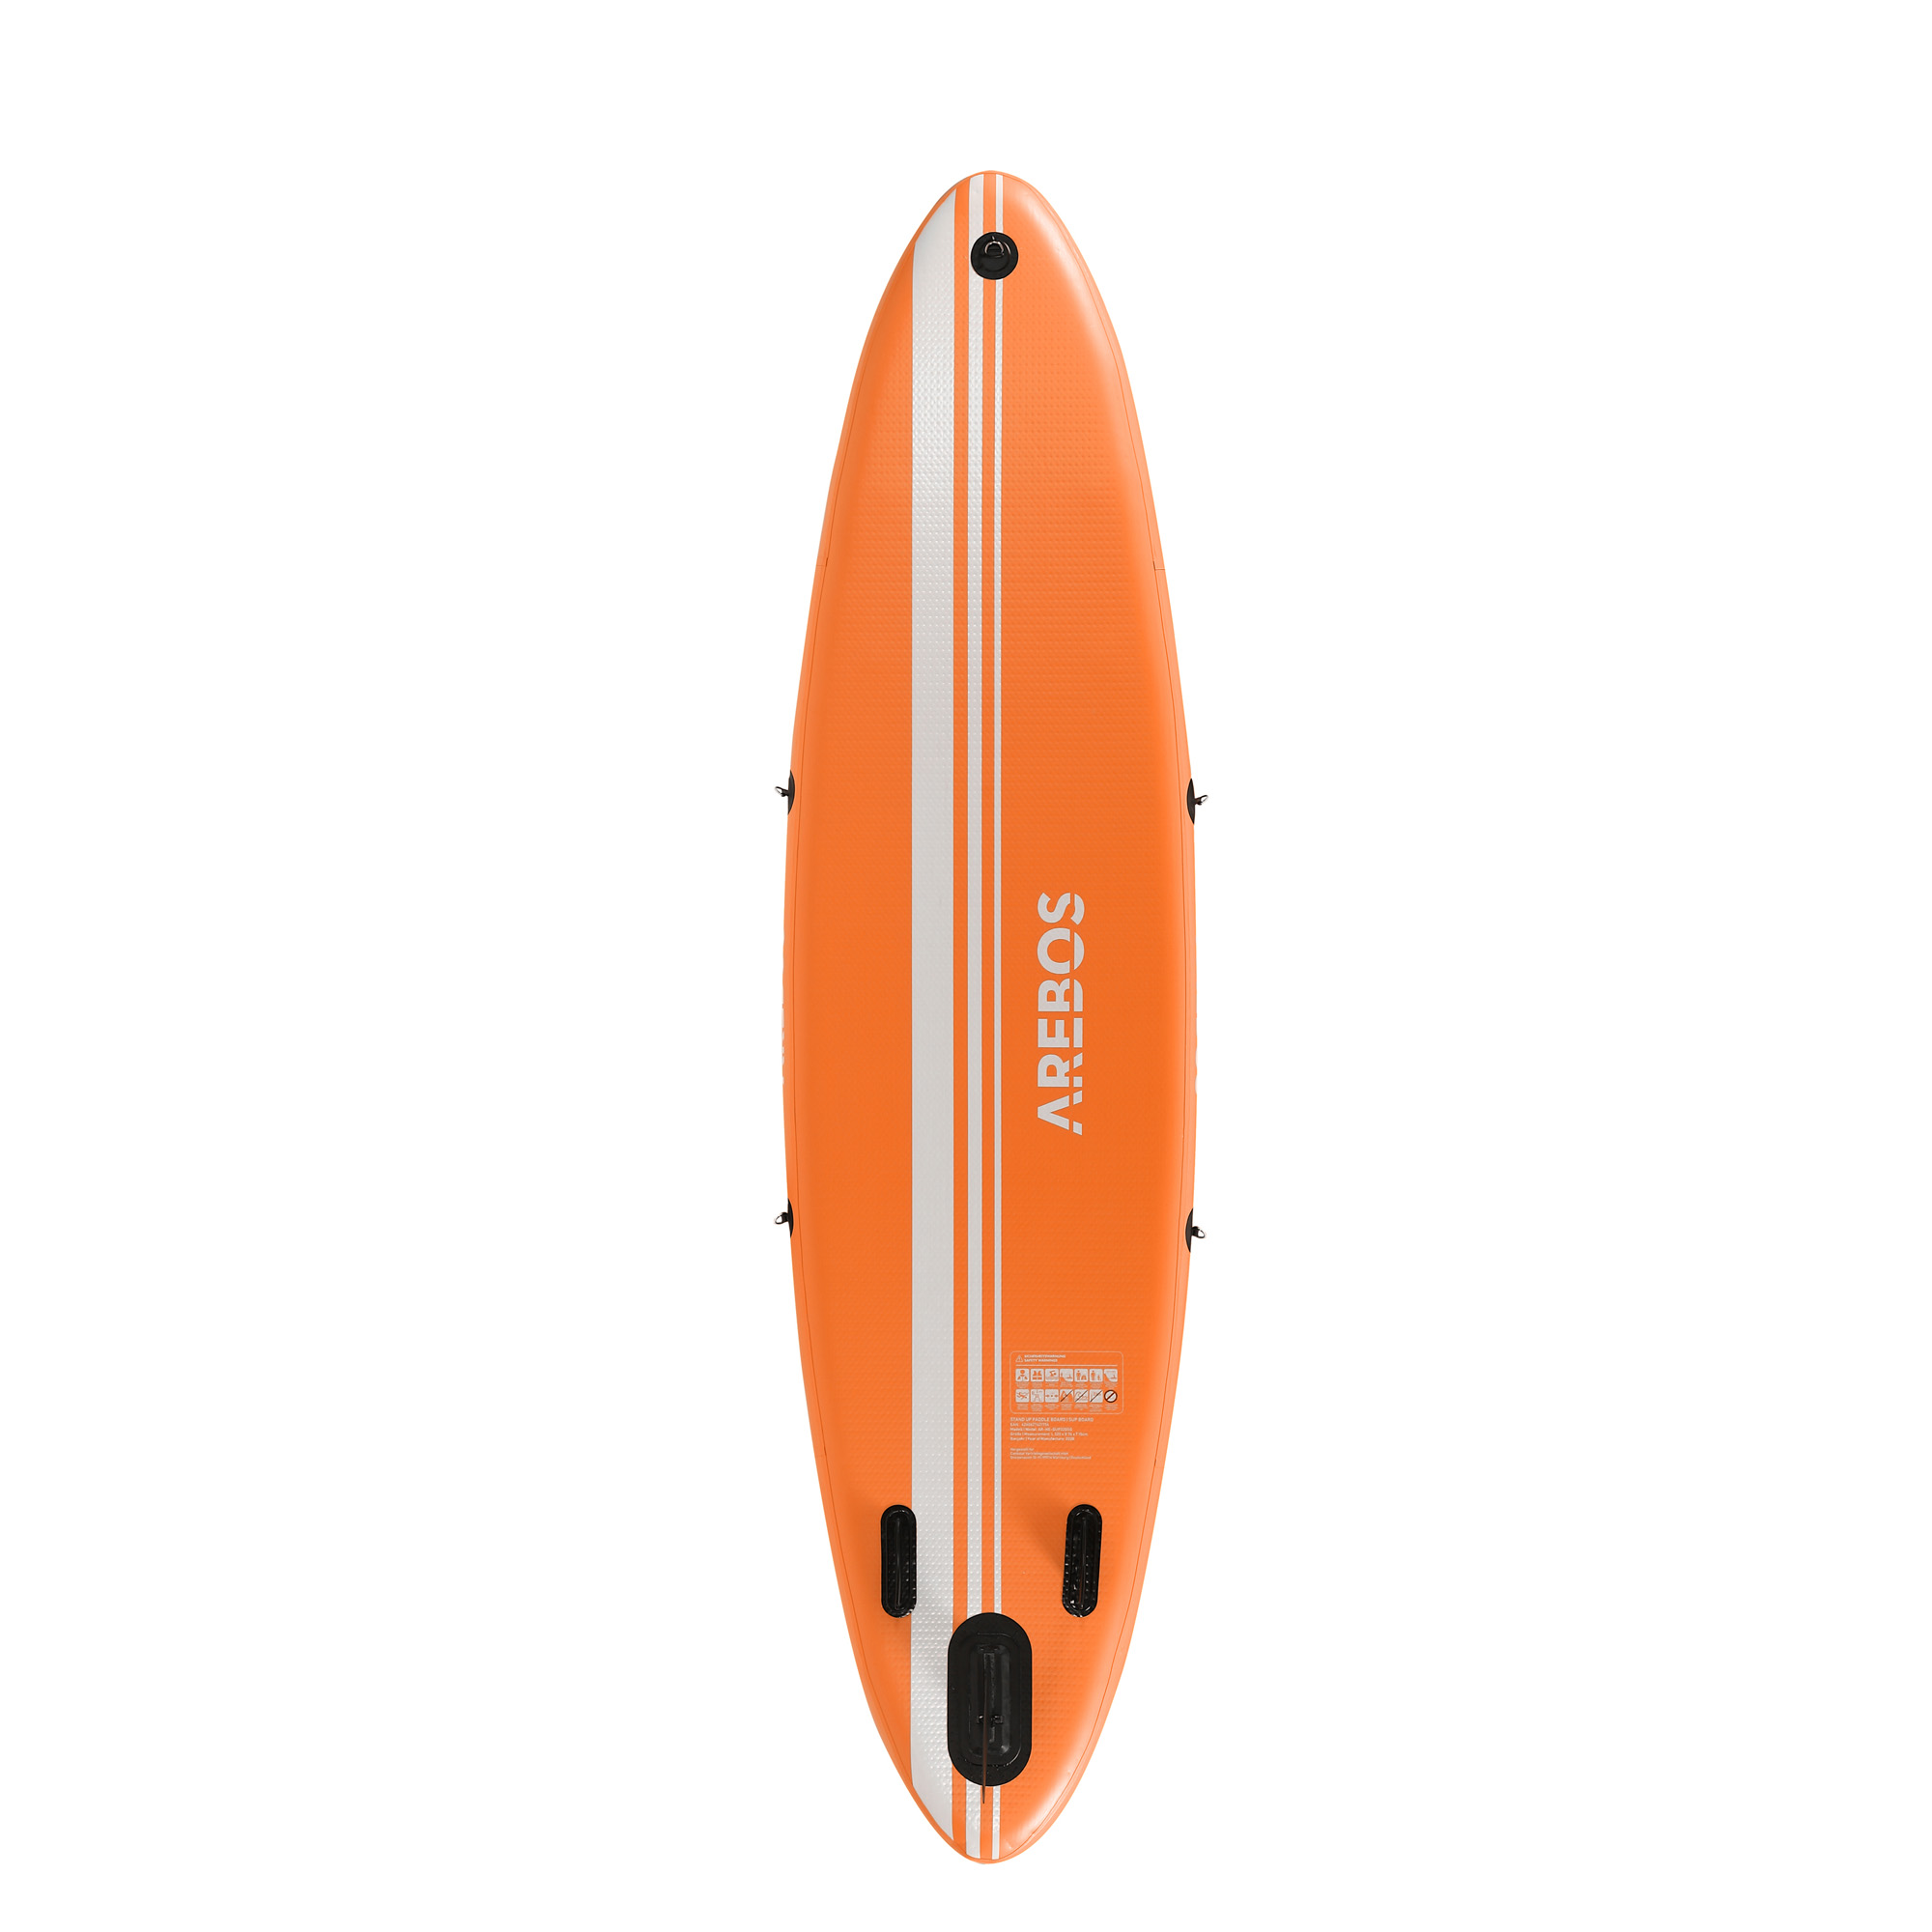 Omhoog verlichten surfen SUP board enkele laag 300cm - Oranje - 4260627421749 - Sport en Beweging